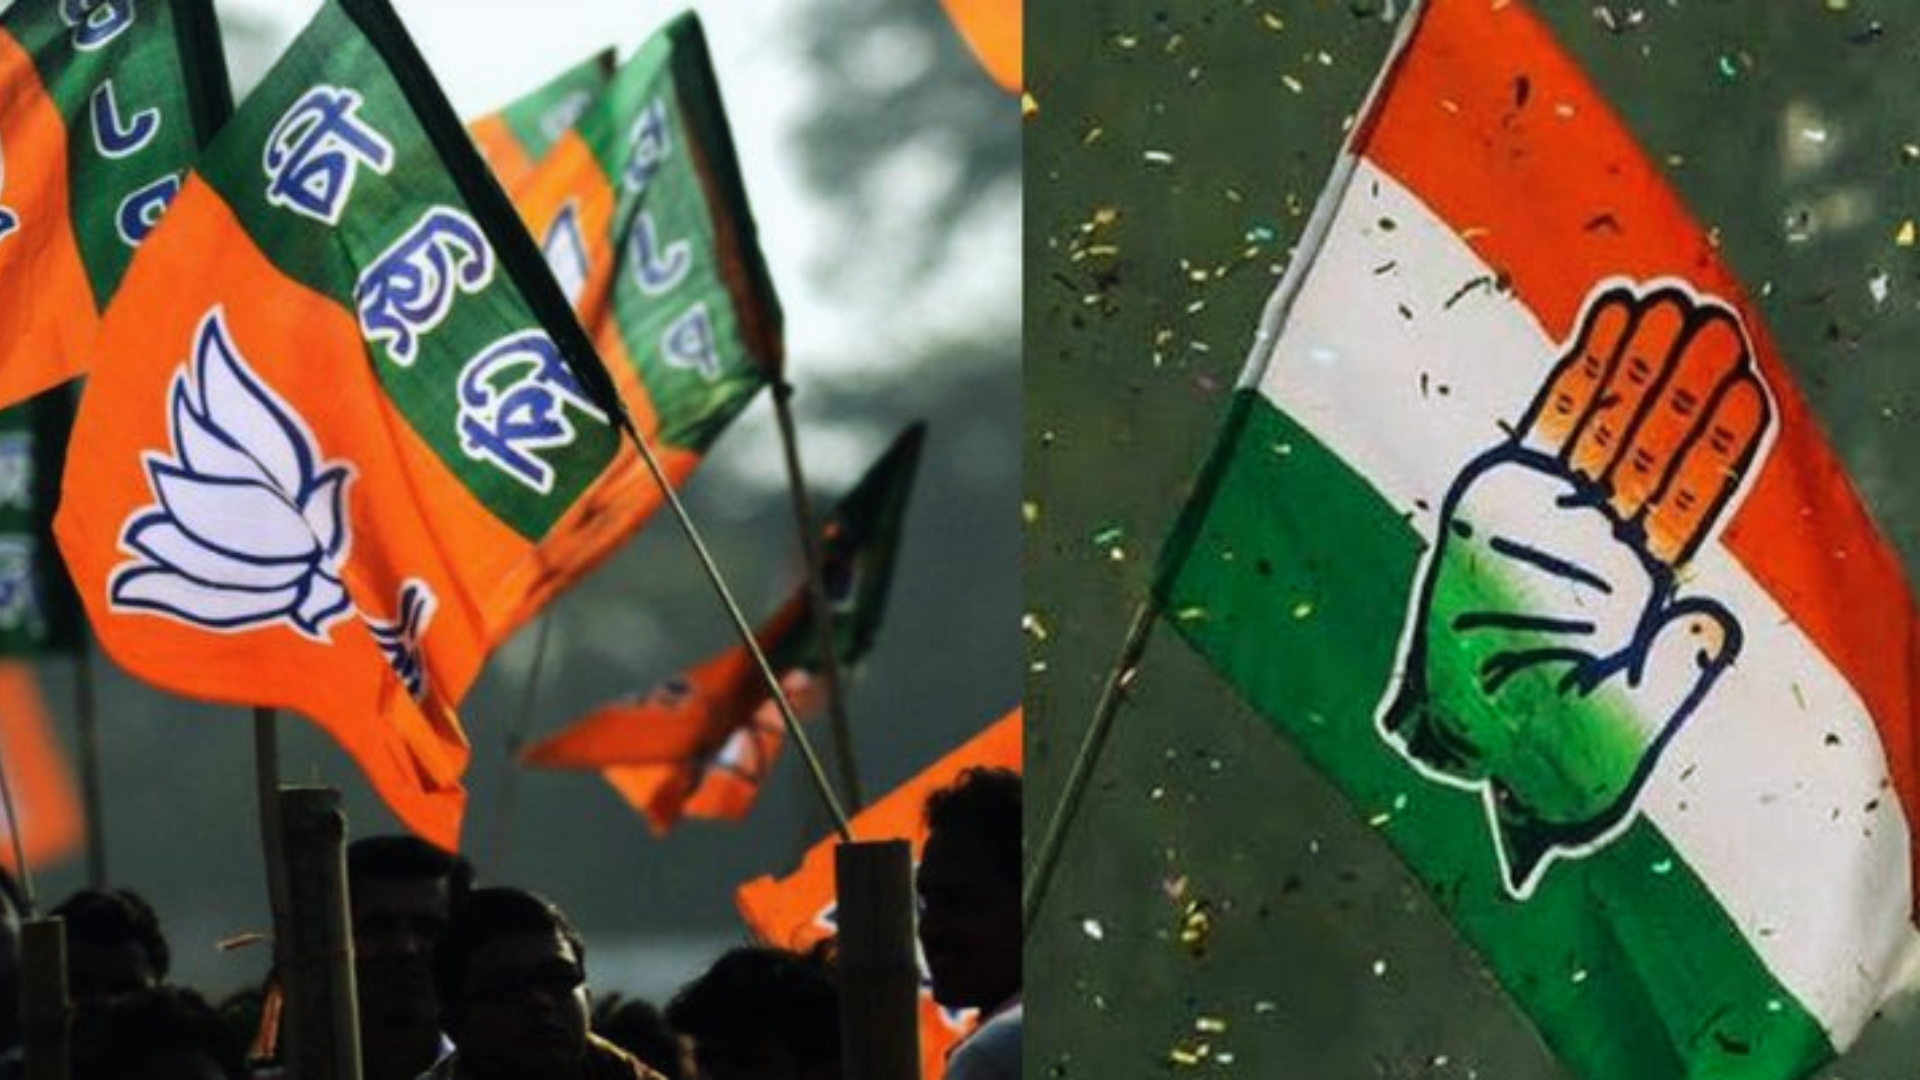 Jharkhand Congress MLA, Post-ED Raids, Asserts Declining BJP’s Lok Sabha Ticket Offer